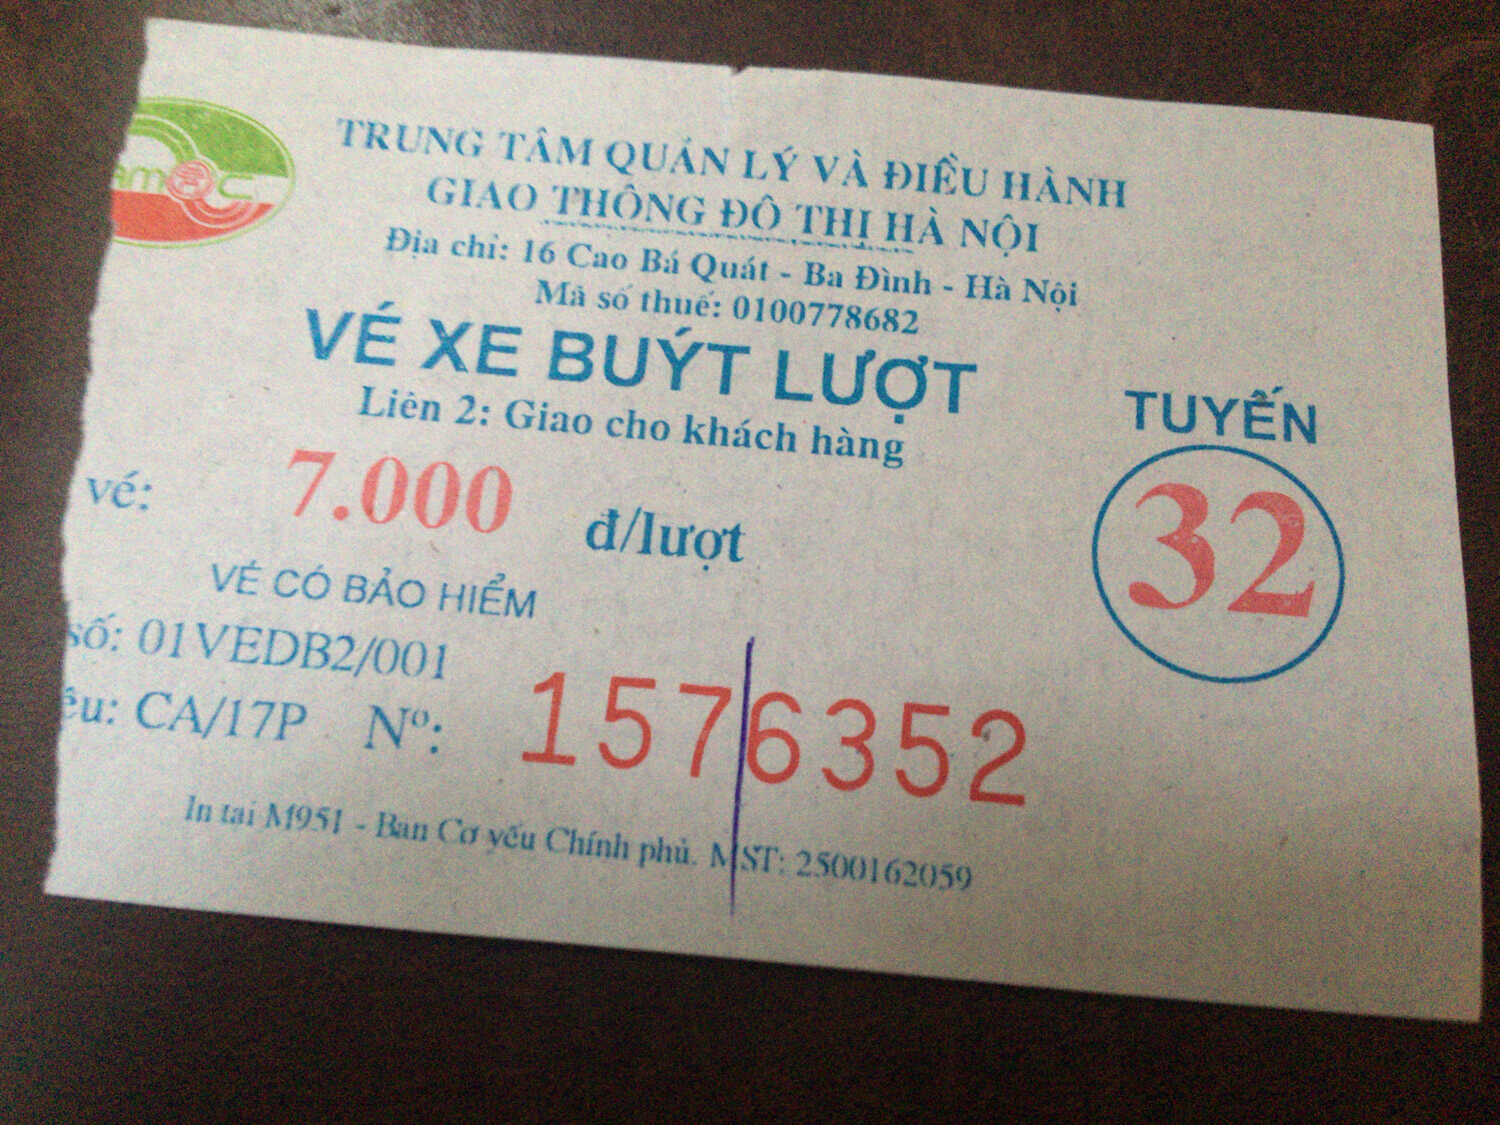 vietnam - ハノイ郊外で美味しいバインクオンとホームステイ！ - 旅ログ, ハノイ, アジア町